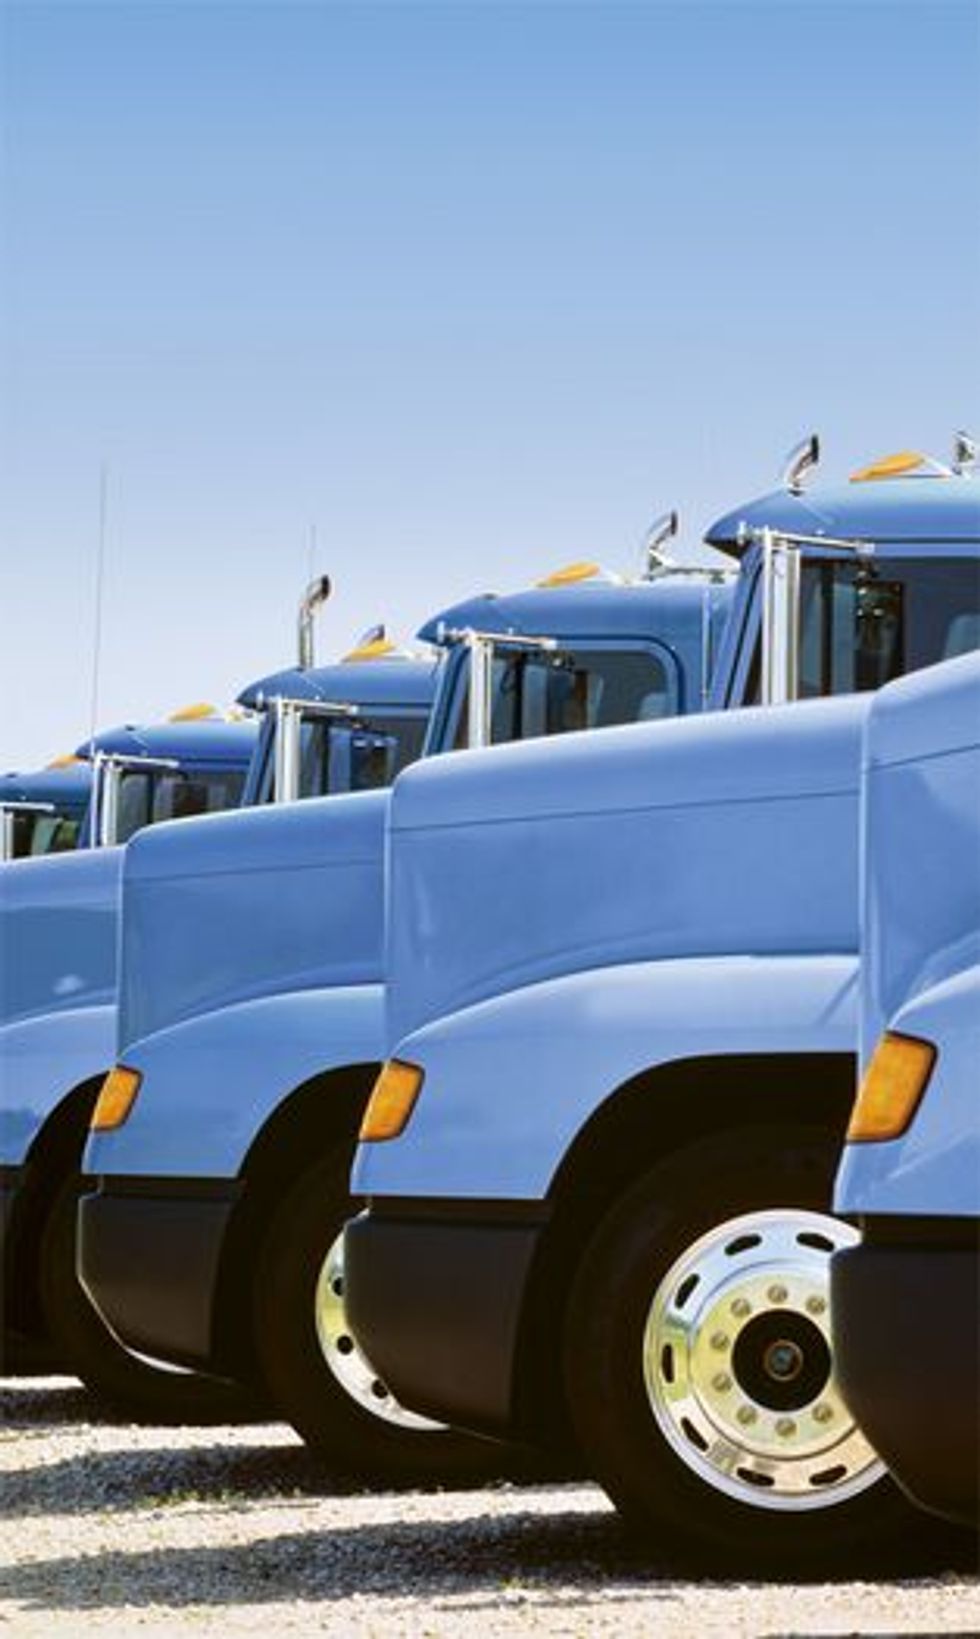 
As Diesel Prices Rise Truck Fleets Seek Solutions
